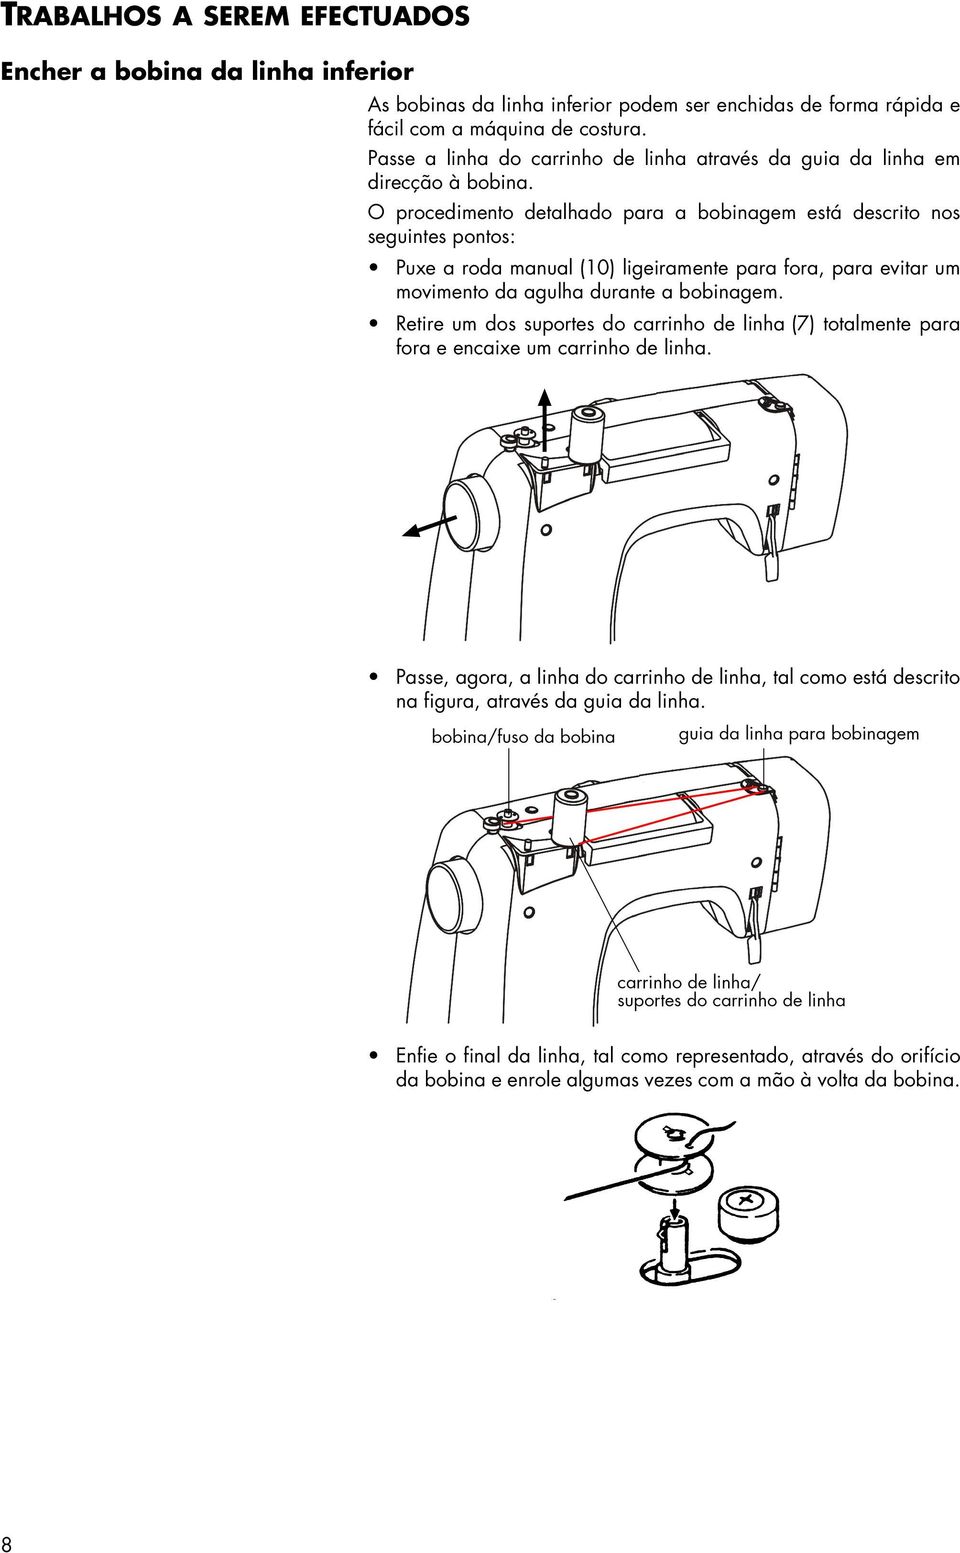 O procedimento detalhado para a bobinagem está descrito nos seguintes pontos: Puxe a roda manual (10) ligeiramente para fora, para evitar um movimento da agulha durante a bobinagem.